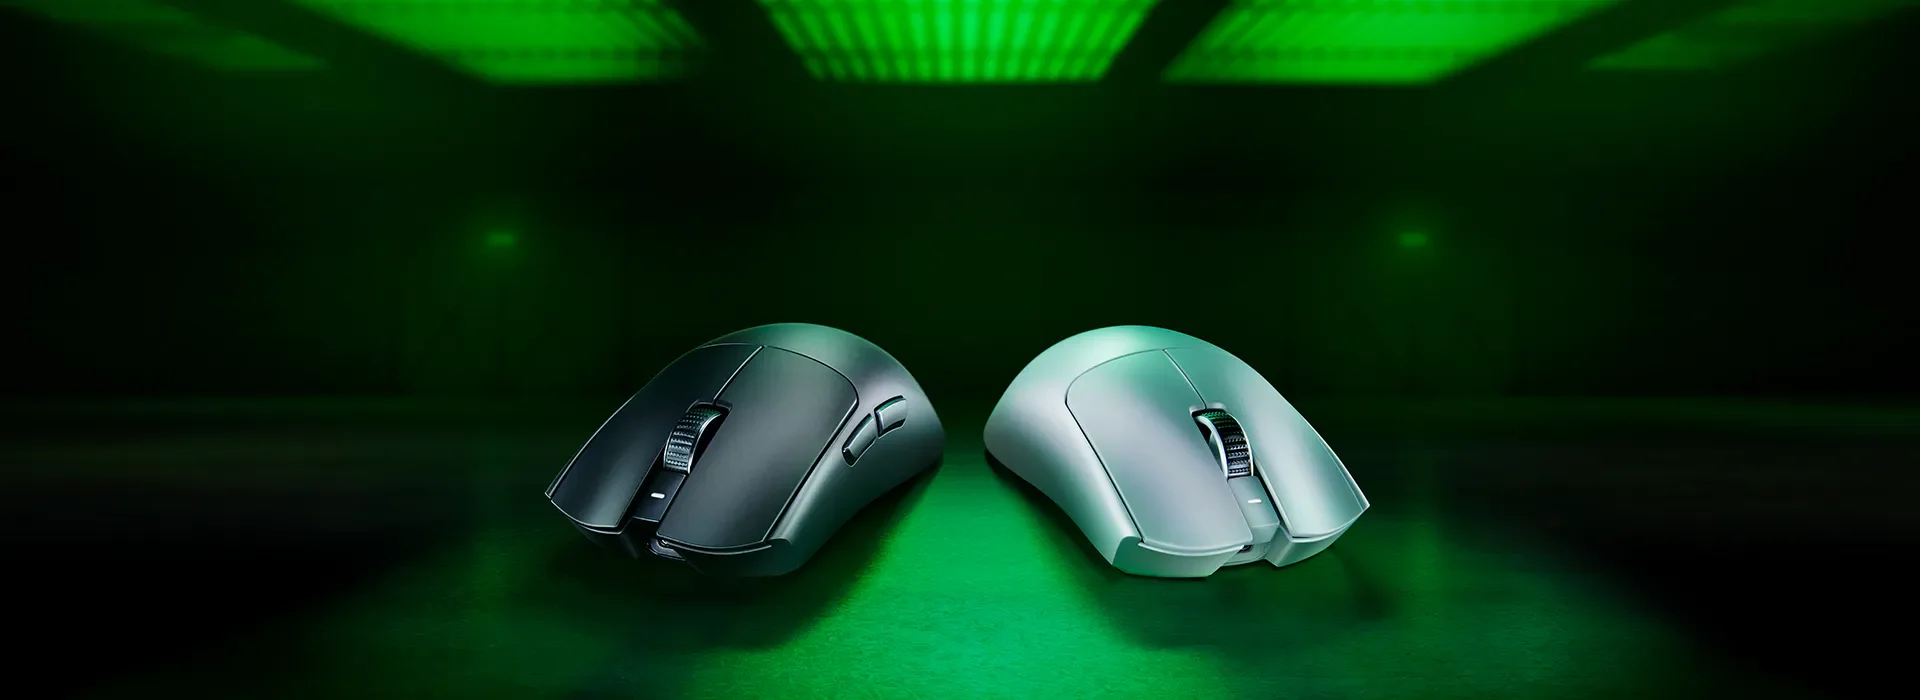 Компания Razer сделала мышь для киберспорта с частотой опроса 8000 Гц